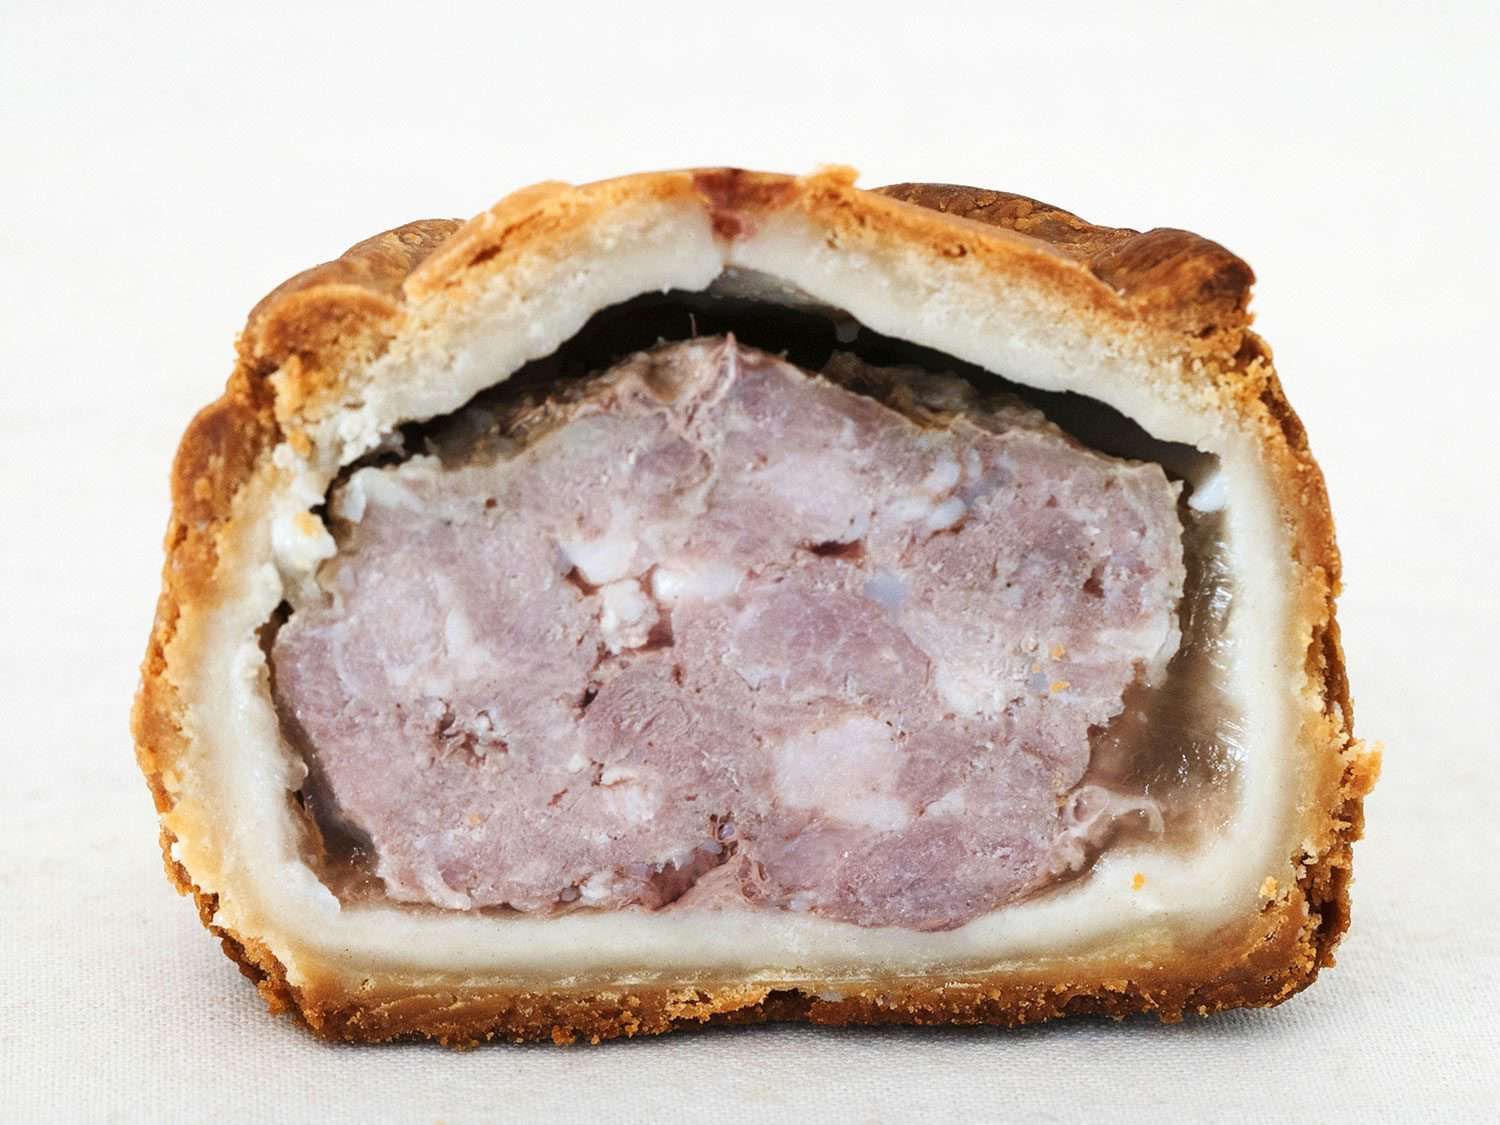 梅尔顿莫布雷猪肉派的内部，可以看到肉馅、果冻层和外面的酥皮